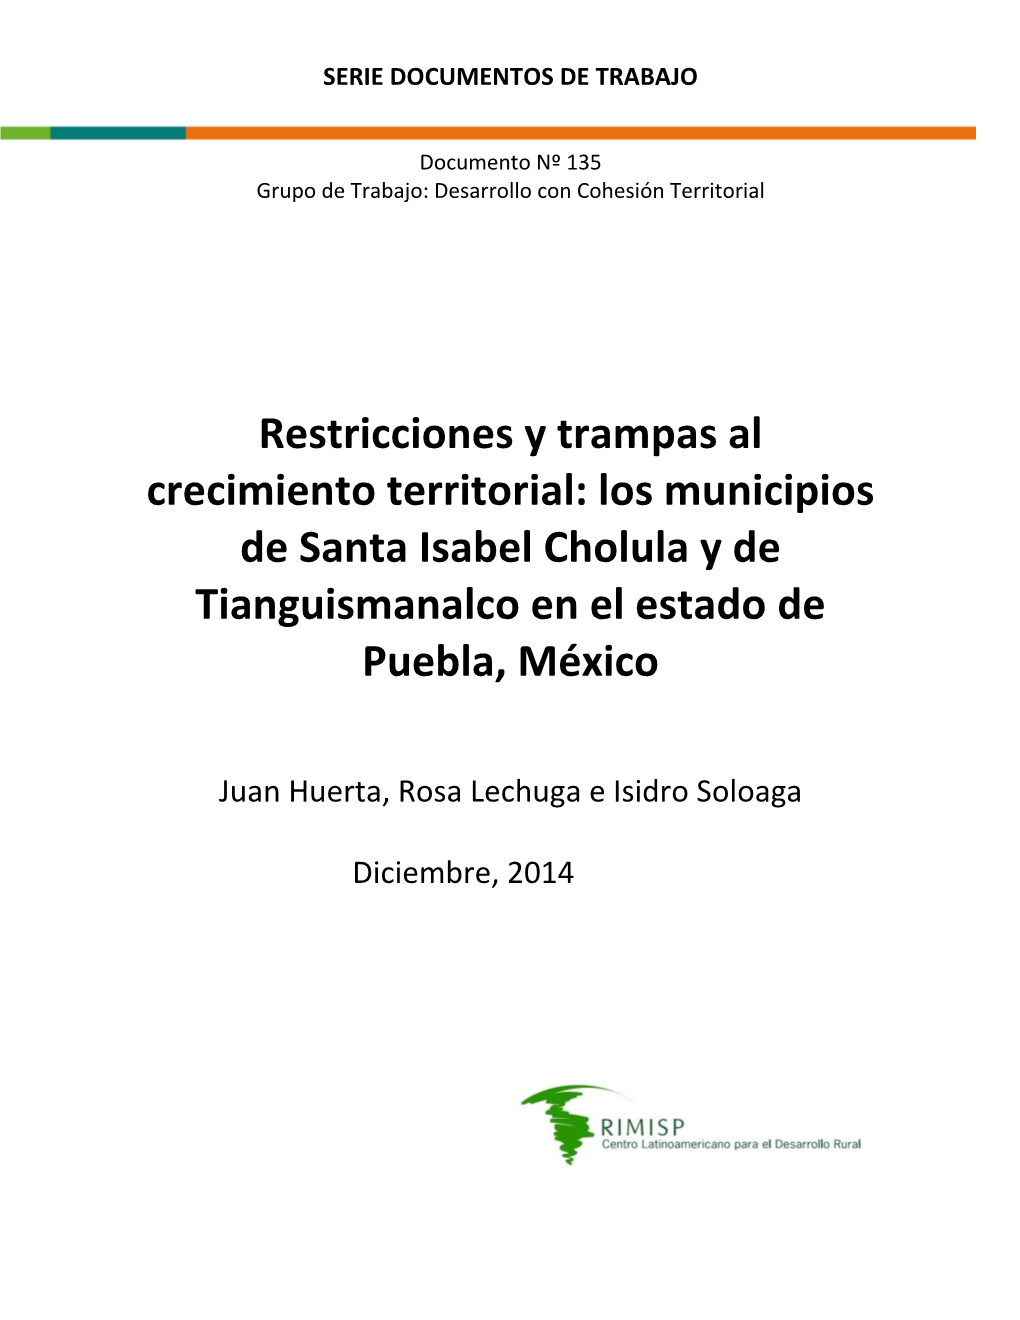 Restricciones Y Trampas Al Crecimiento Territorial: Los Municipios De Santa Isabel Cholula Y De Tianguismanalco En El Estado De Puebla, México